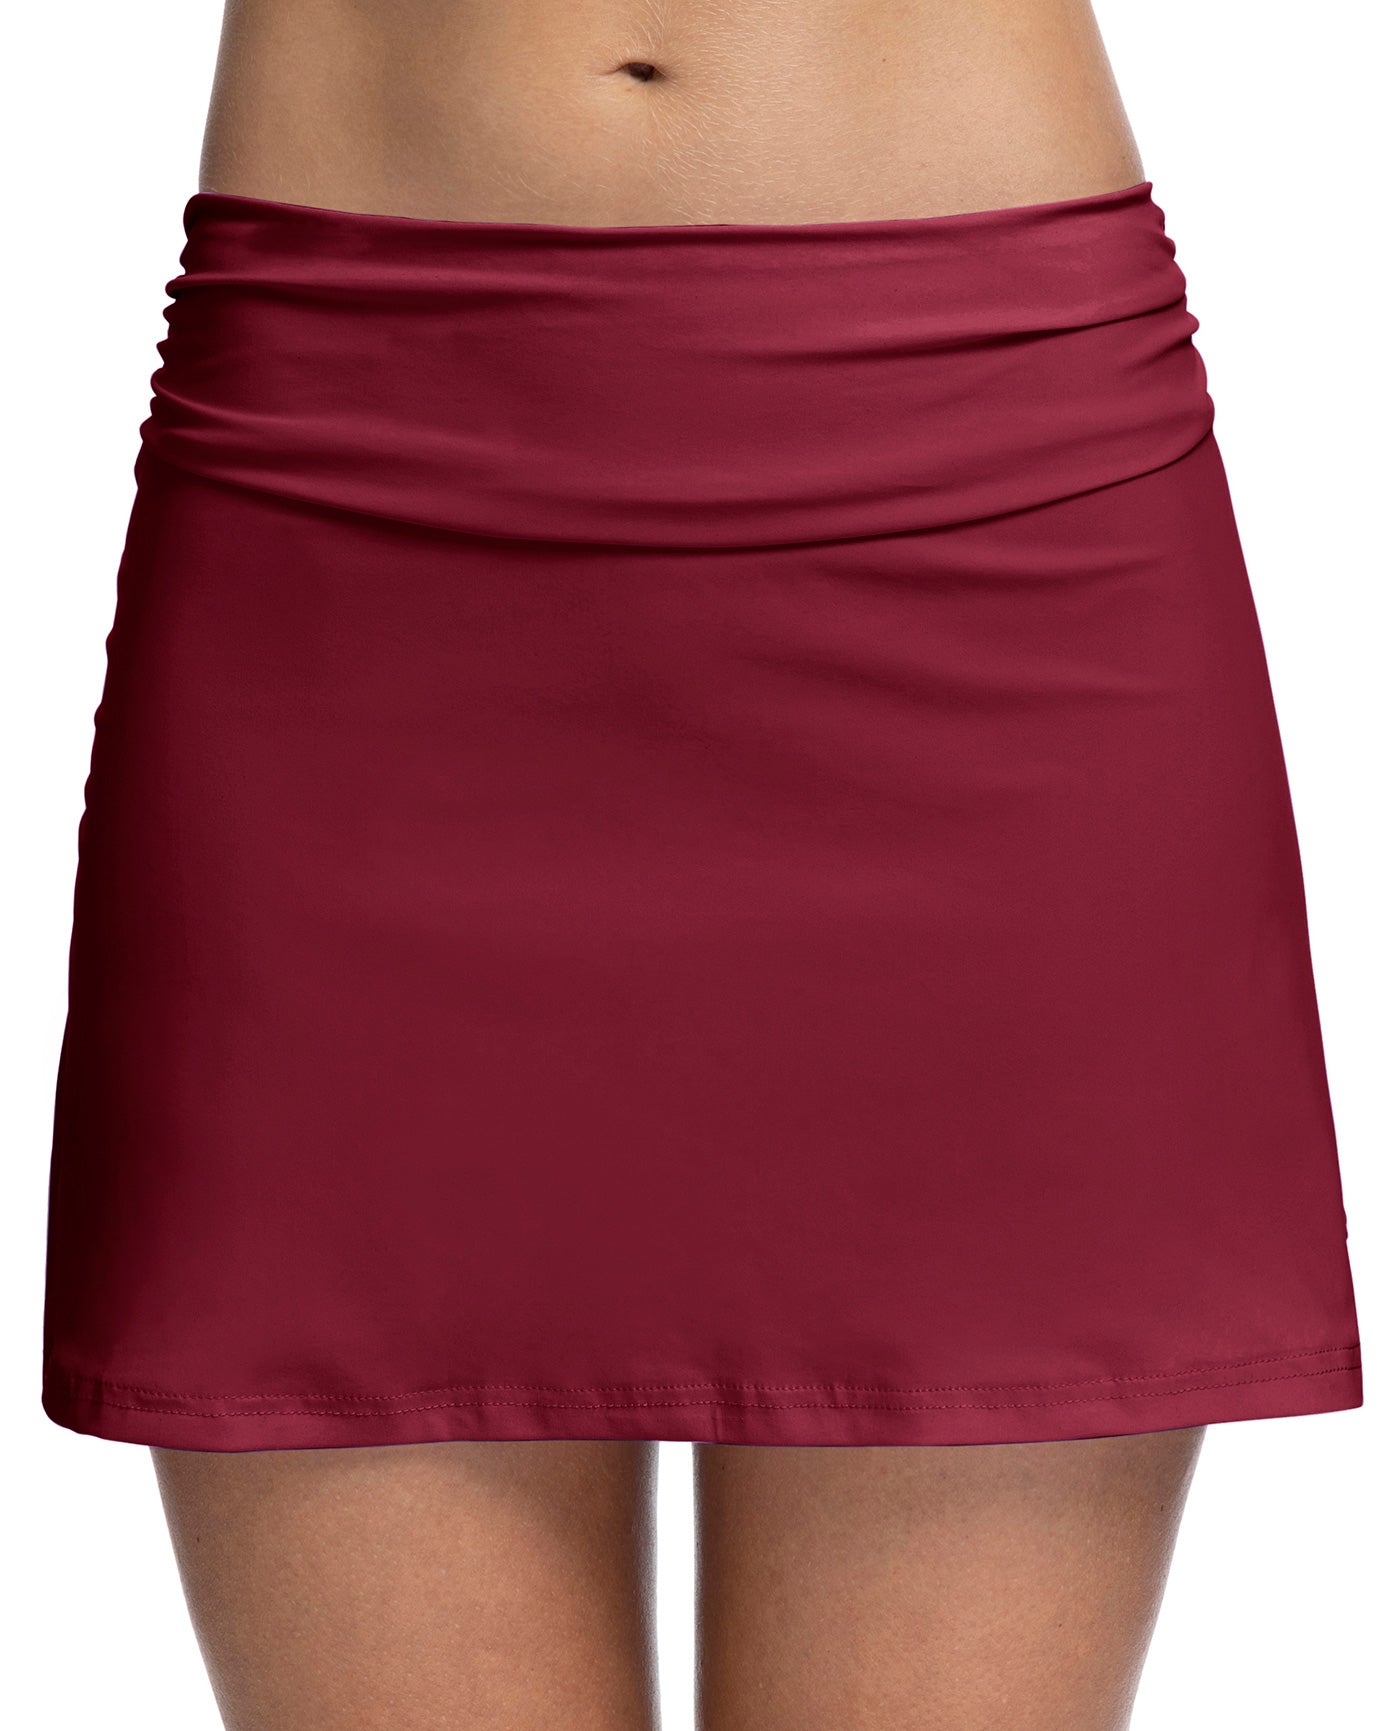 Front View Of Profile By Gottex Tutti Frutti Cover Up Skirt | PROFILE TUTTI FRUTTI MERLOT